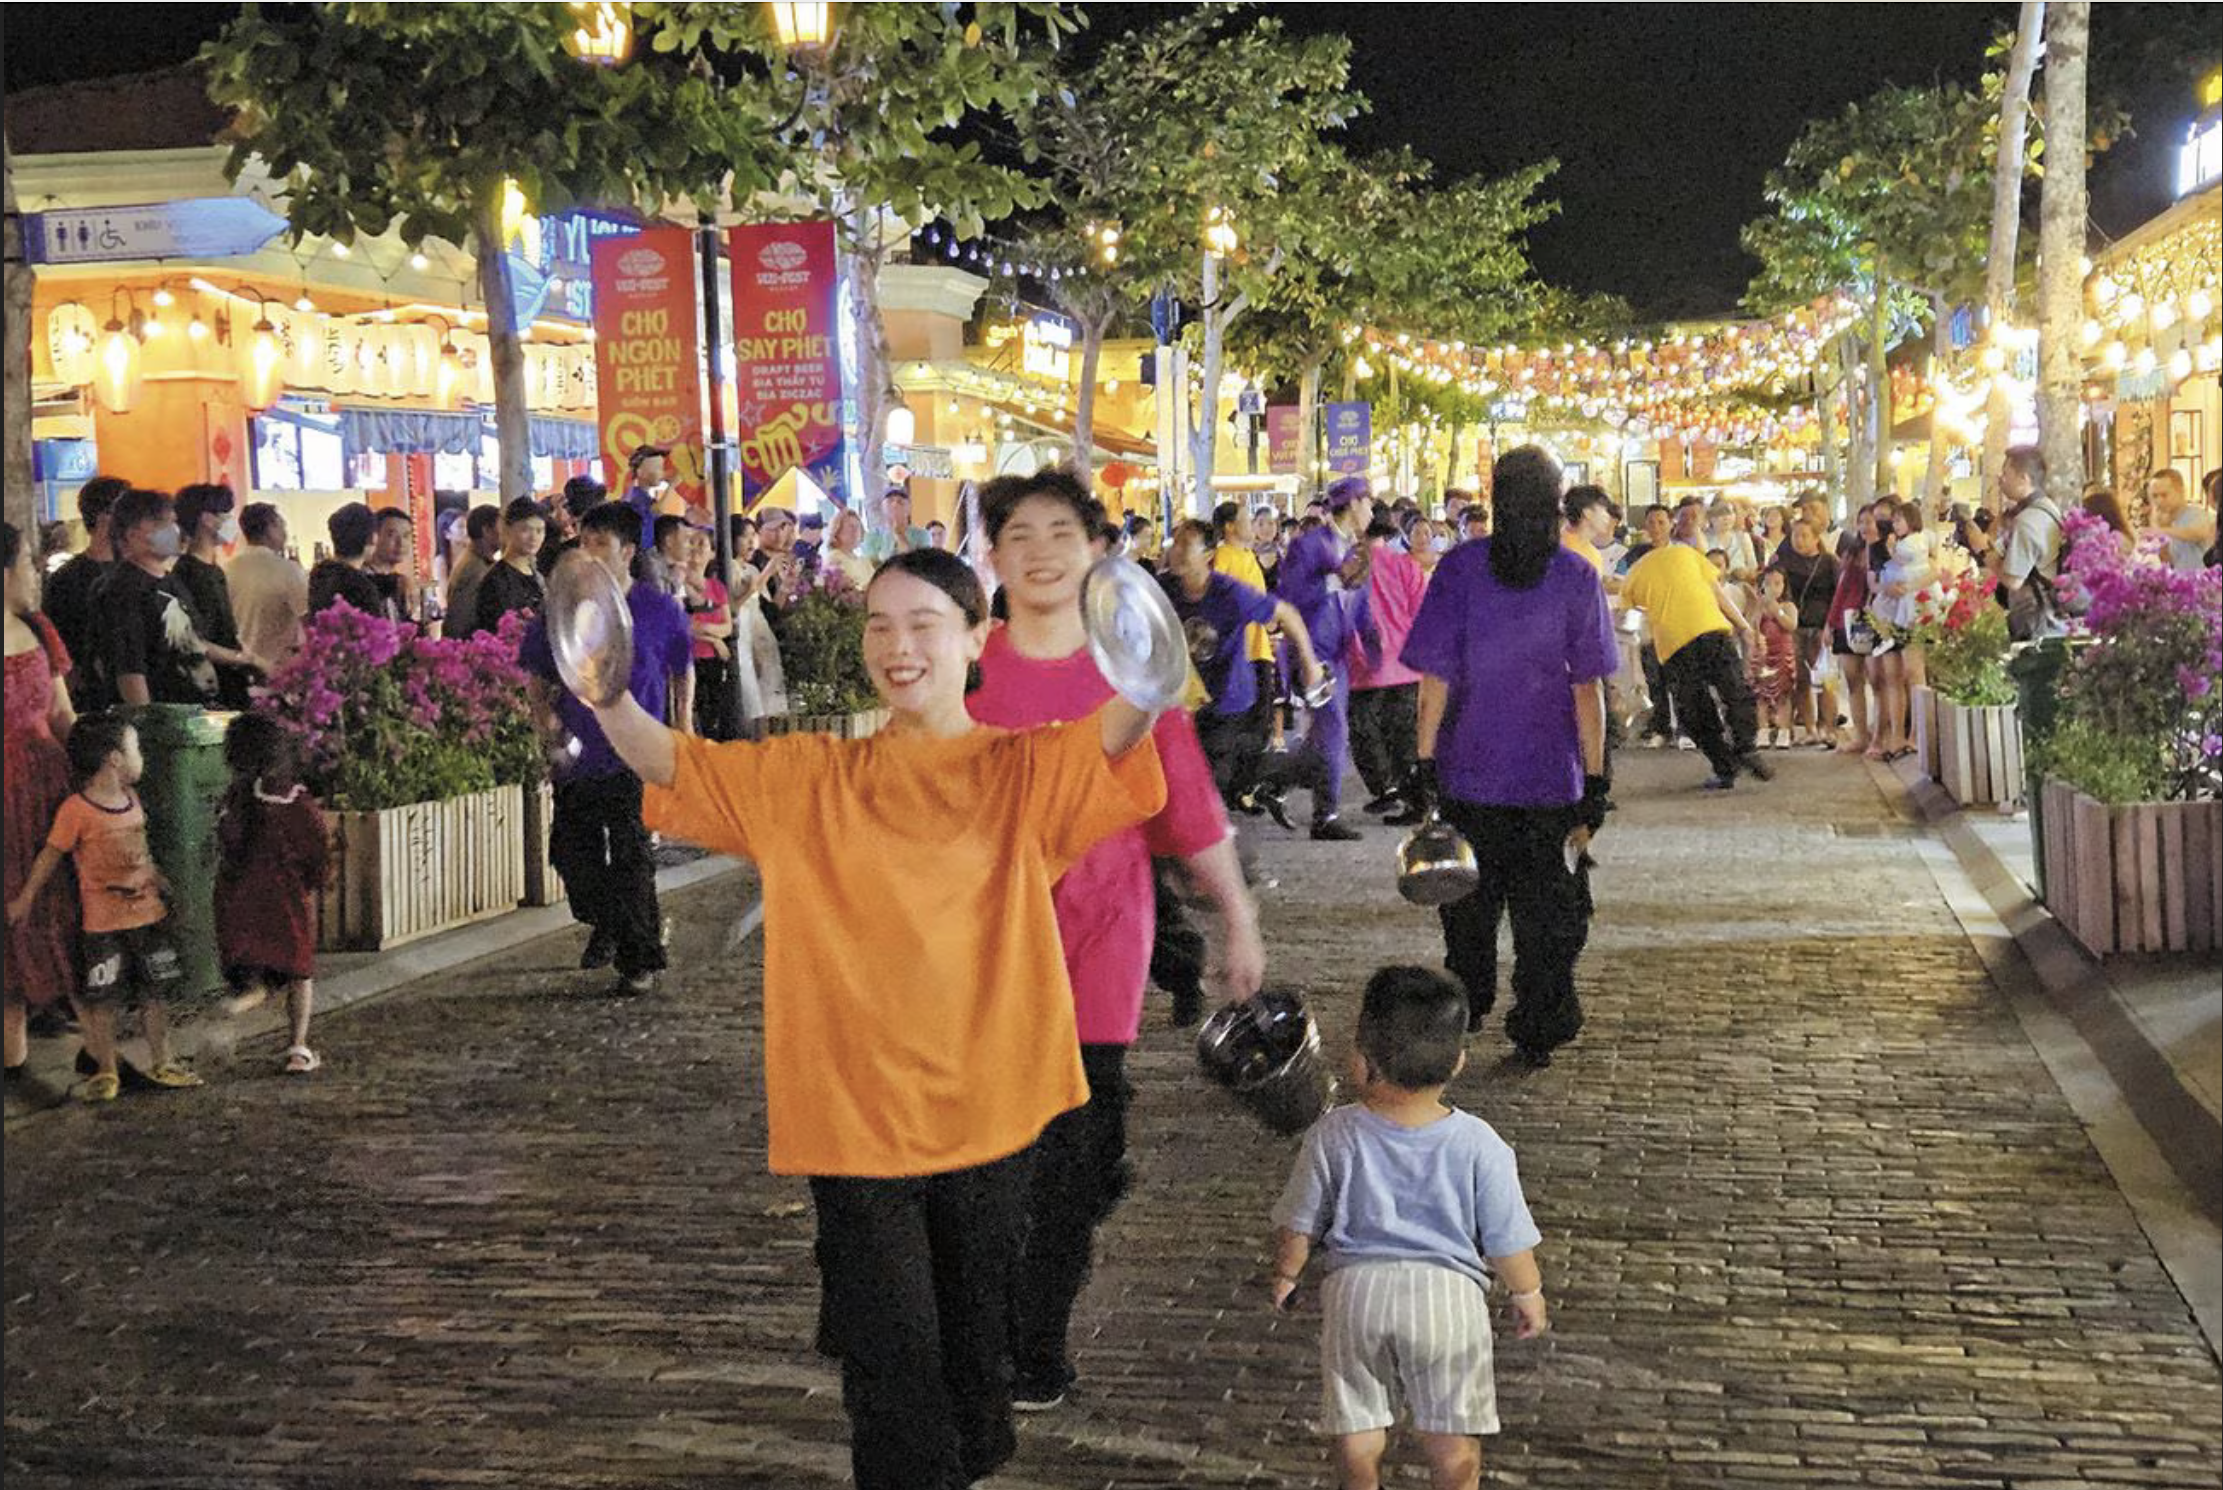 Không bar hay karaoke, sao chợ đêm Vui Phết vẫn khiến du khách hưng phấn?